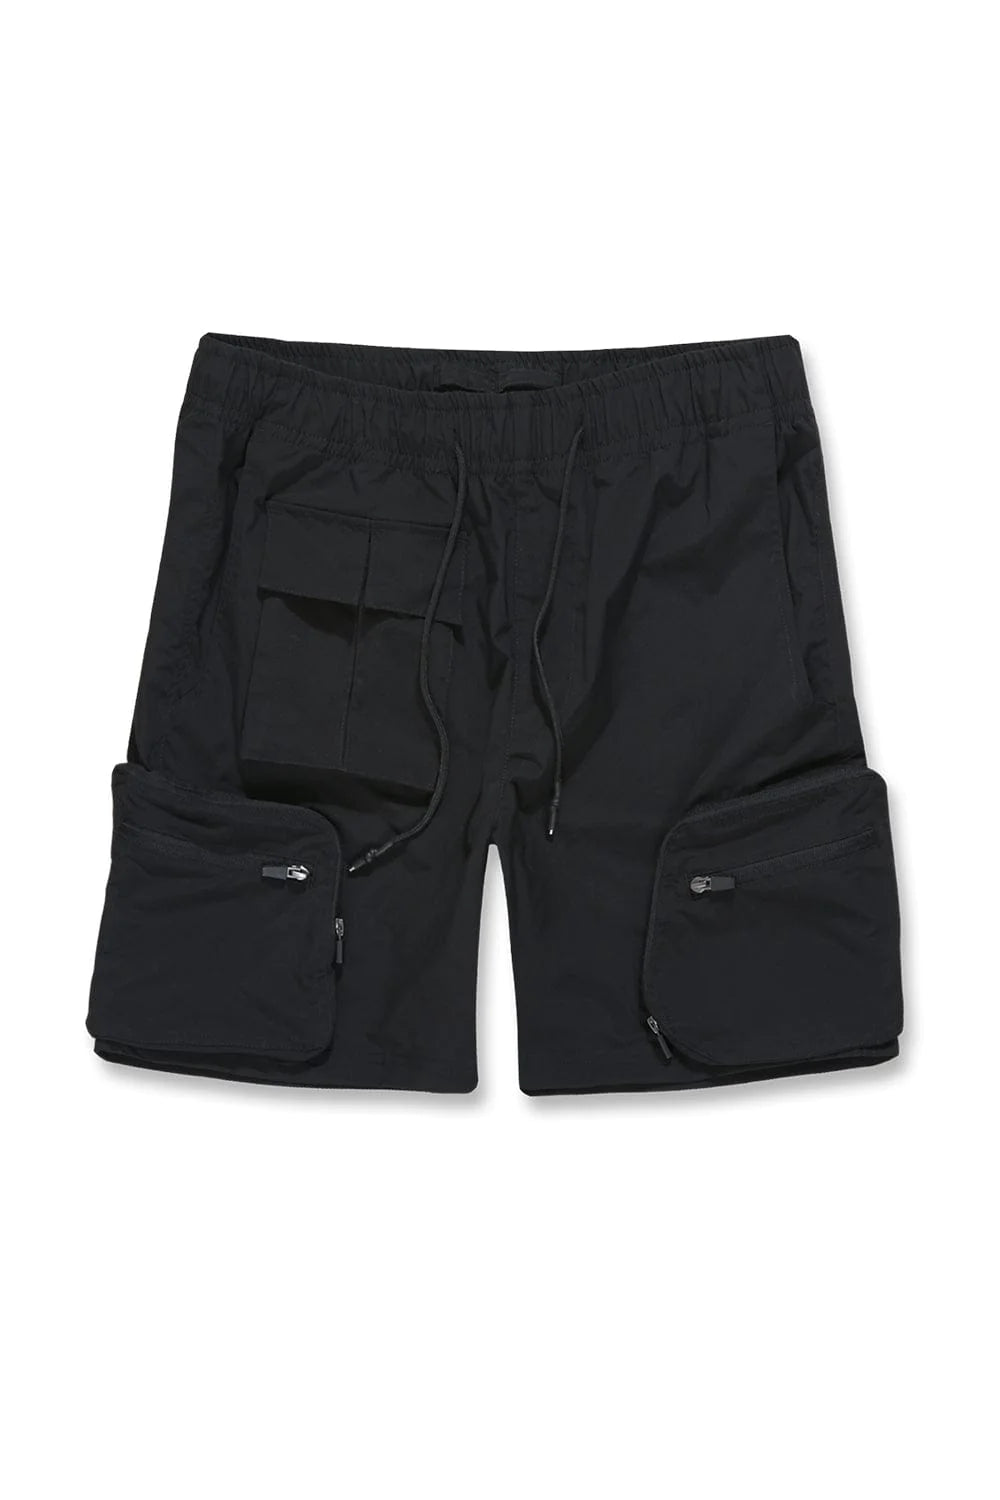 “NEW” Jordan Craig Retro Cargo Shorts (Black)